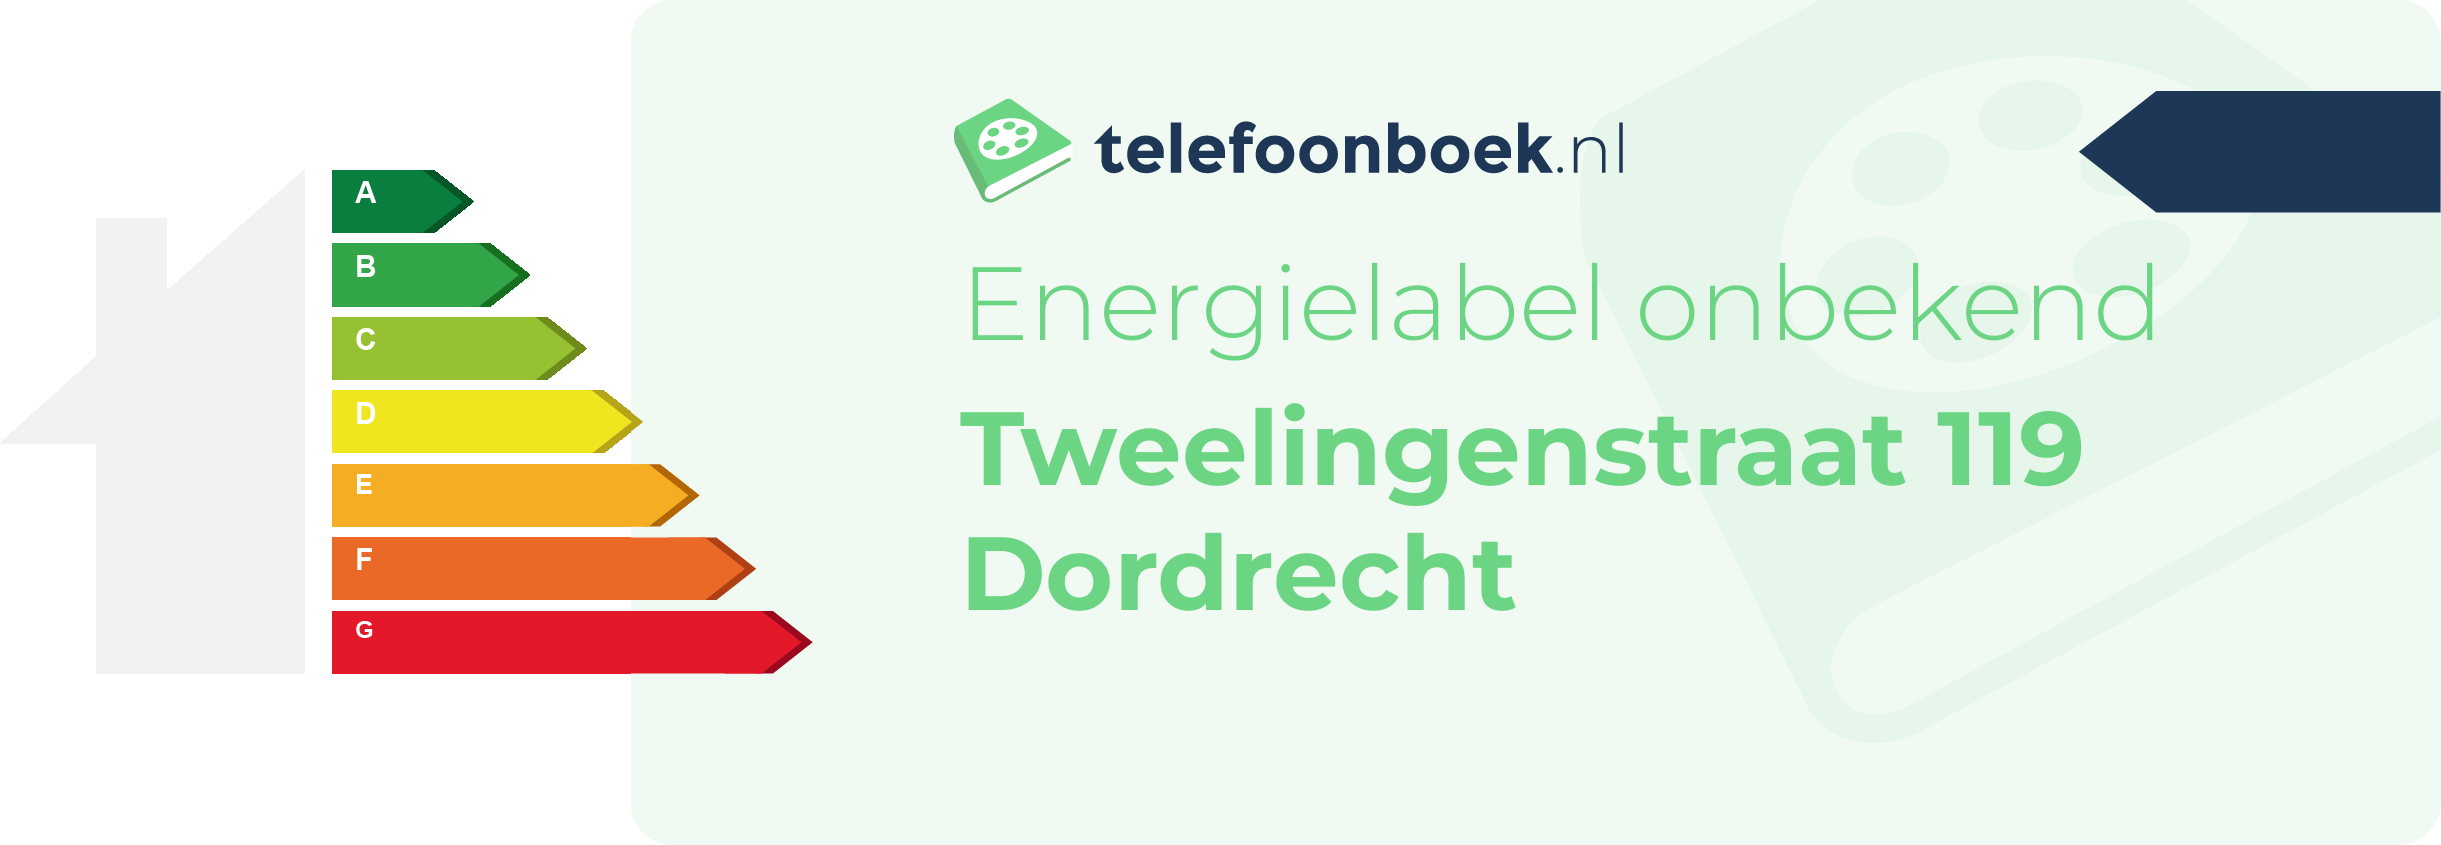 Energielabel Tweelingenstraat 119 Dordrecht